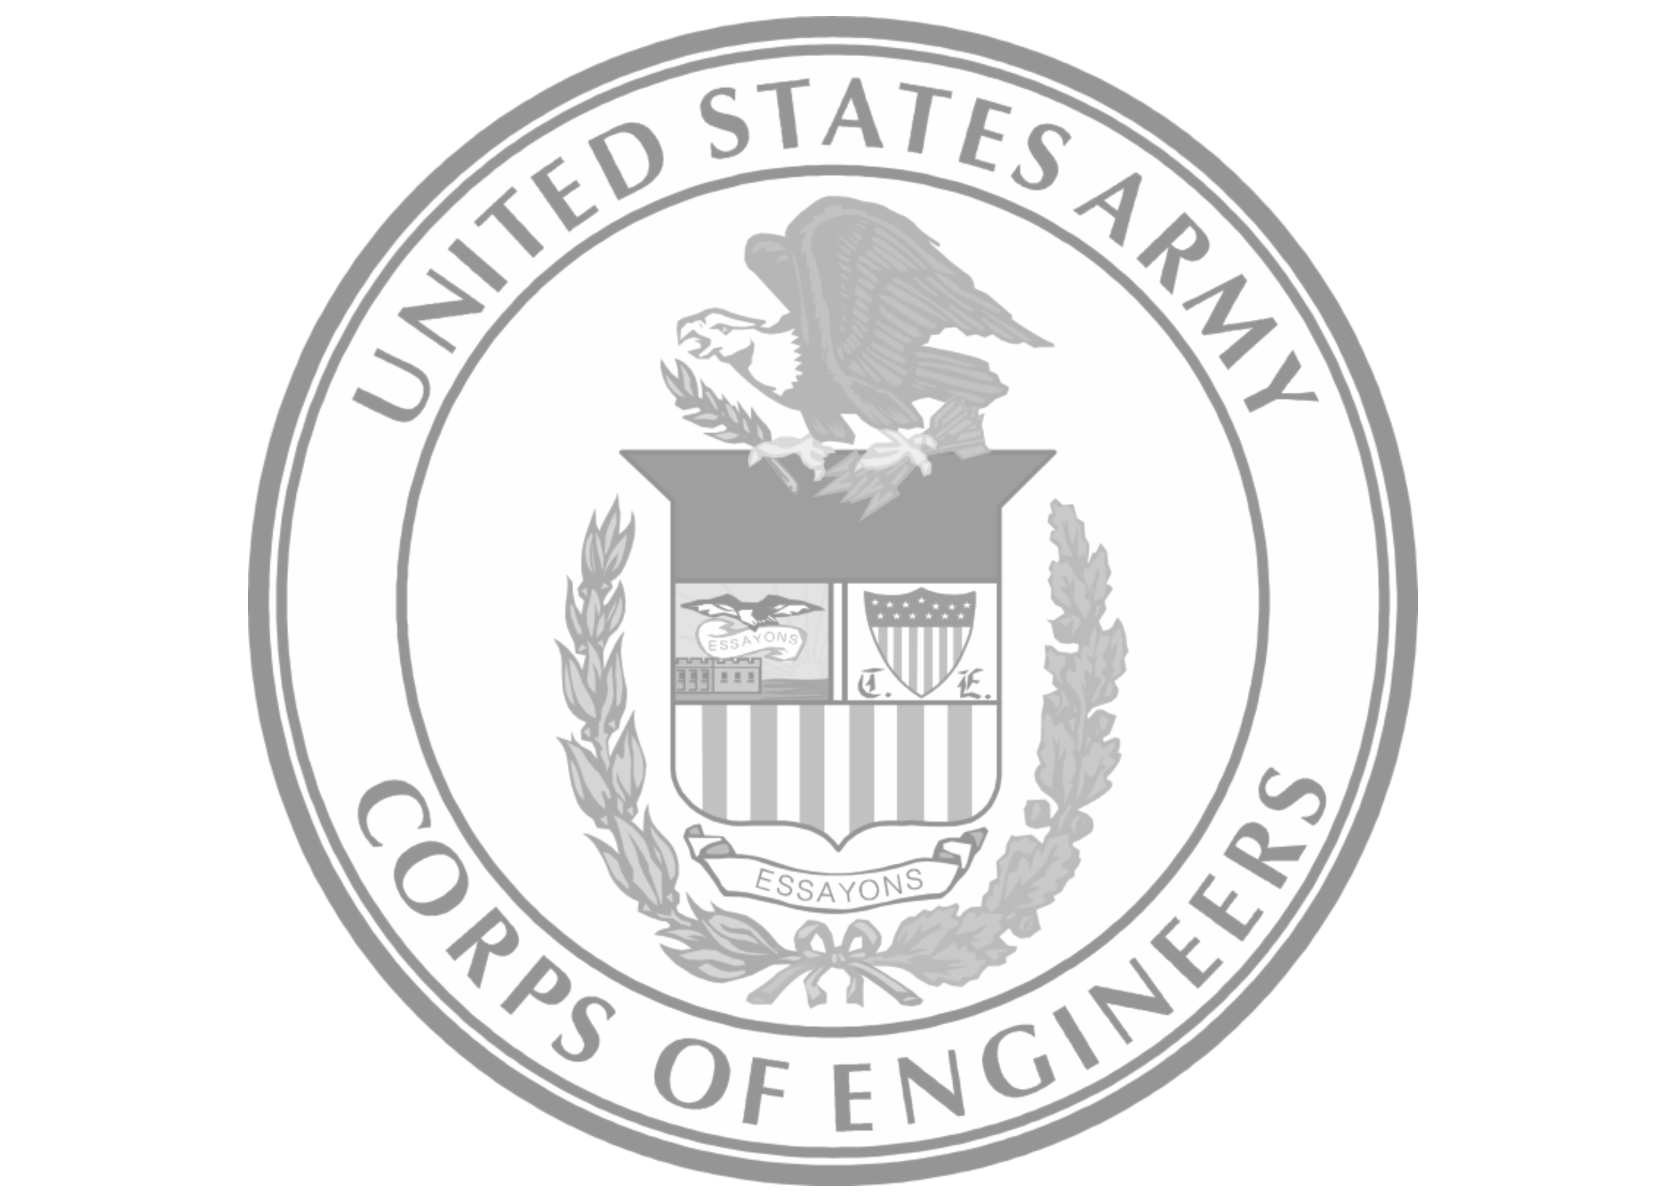 U.S. Army Corp of Engineers